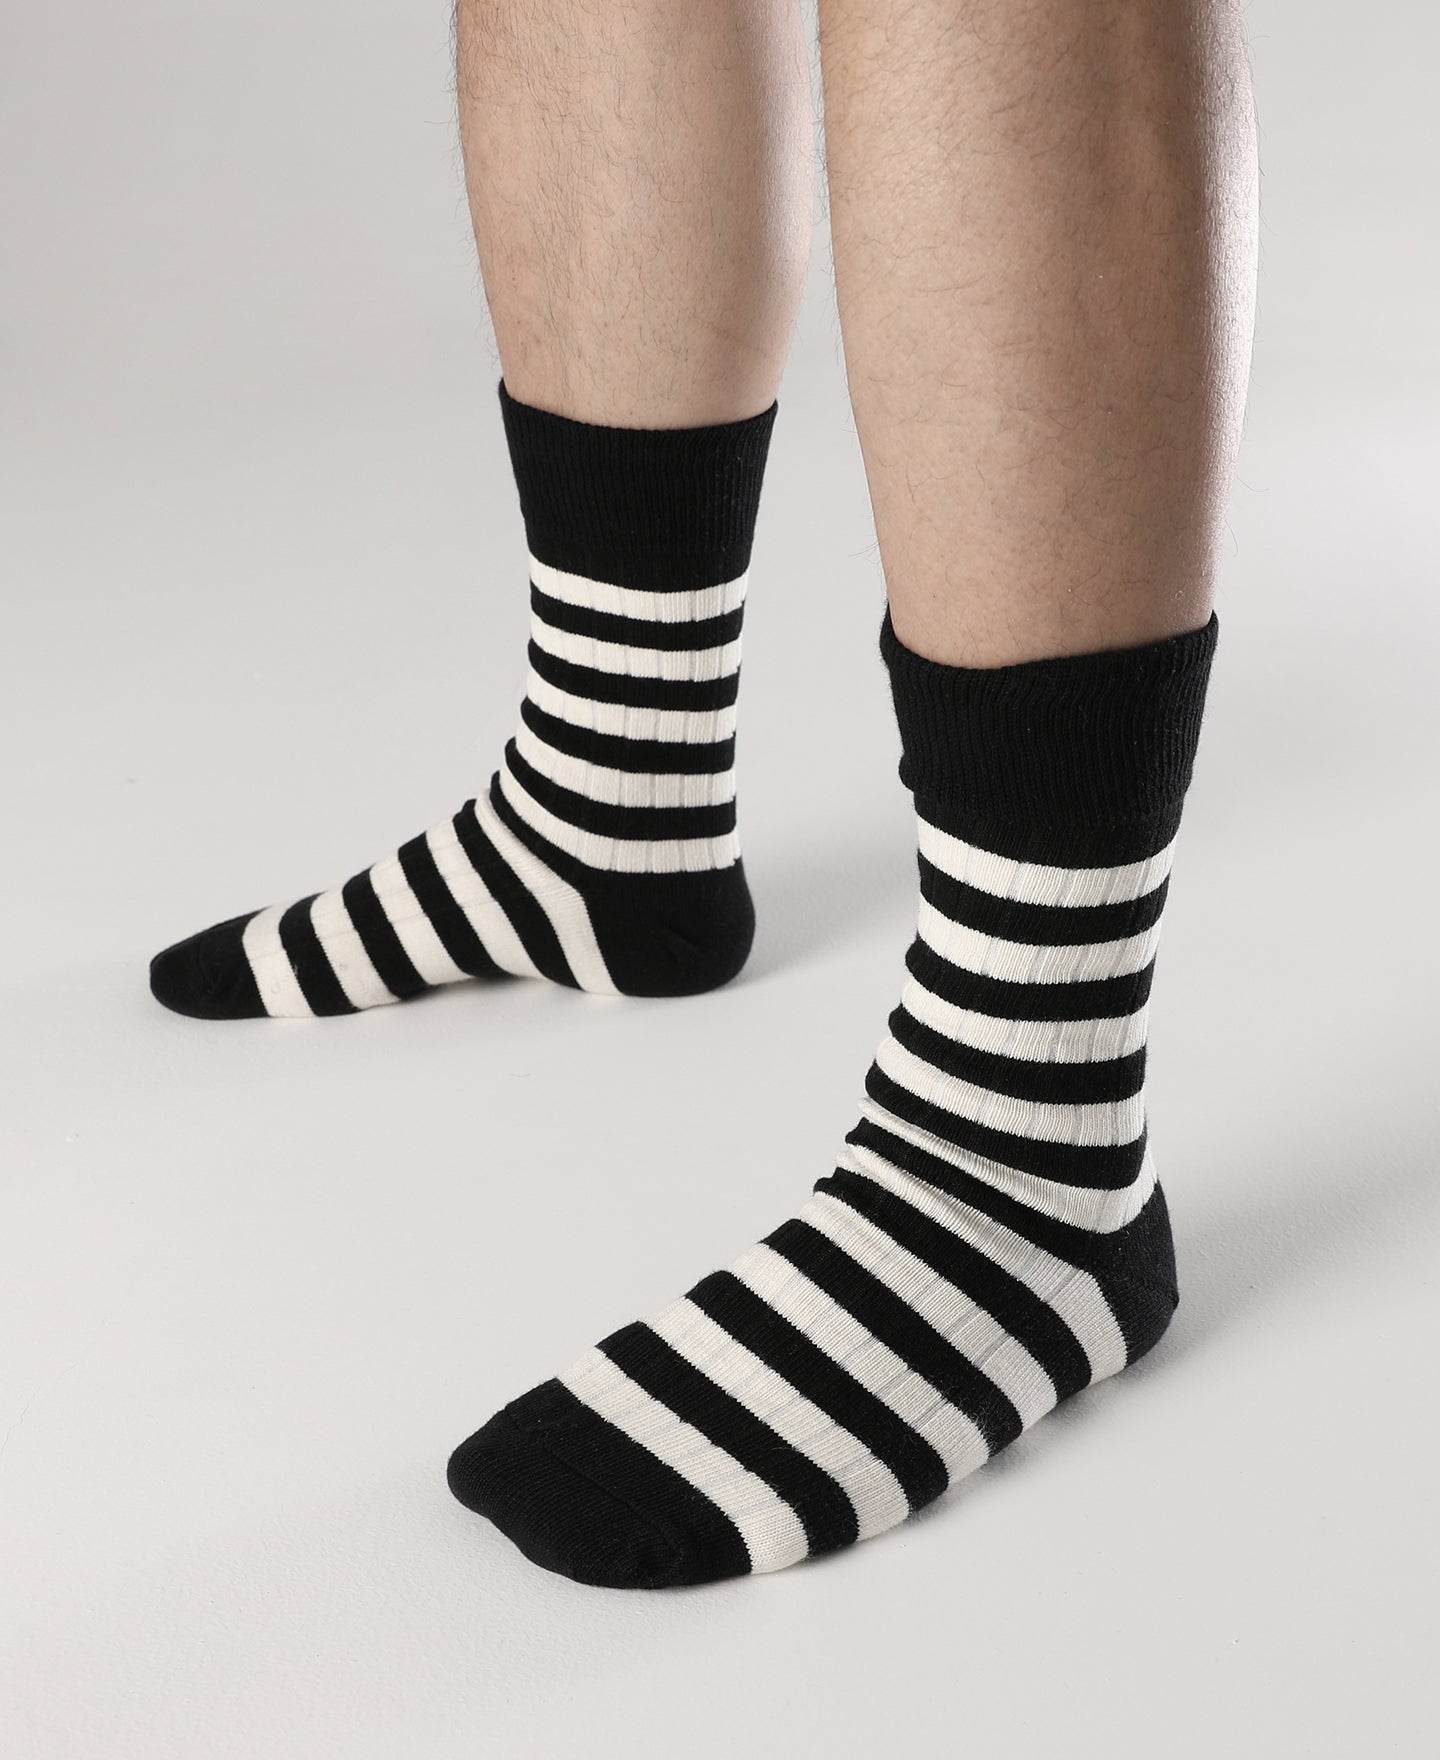 Men's Retro Black and White Striped Cotton Thick Crew Socks